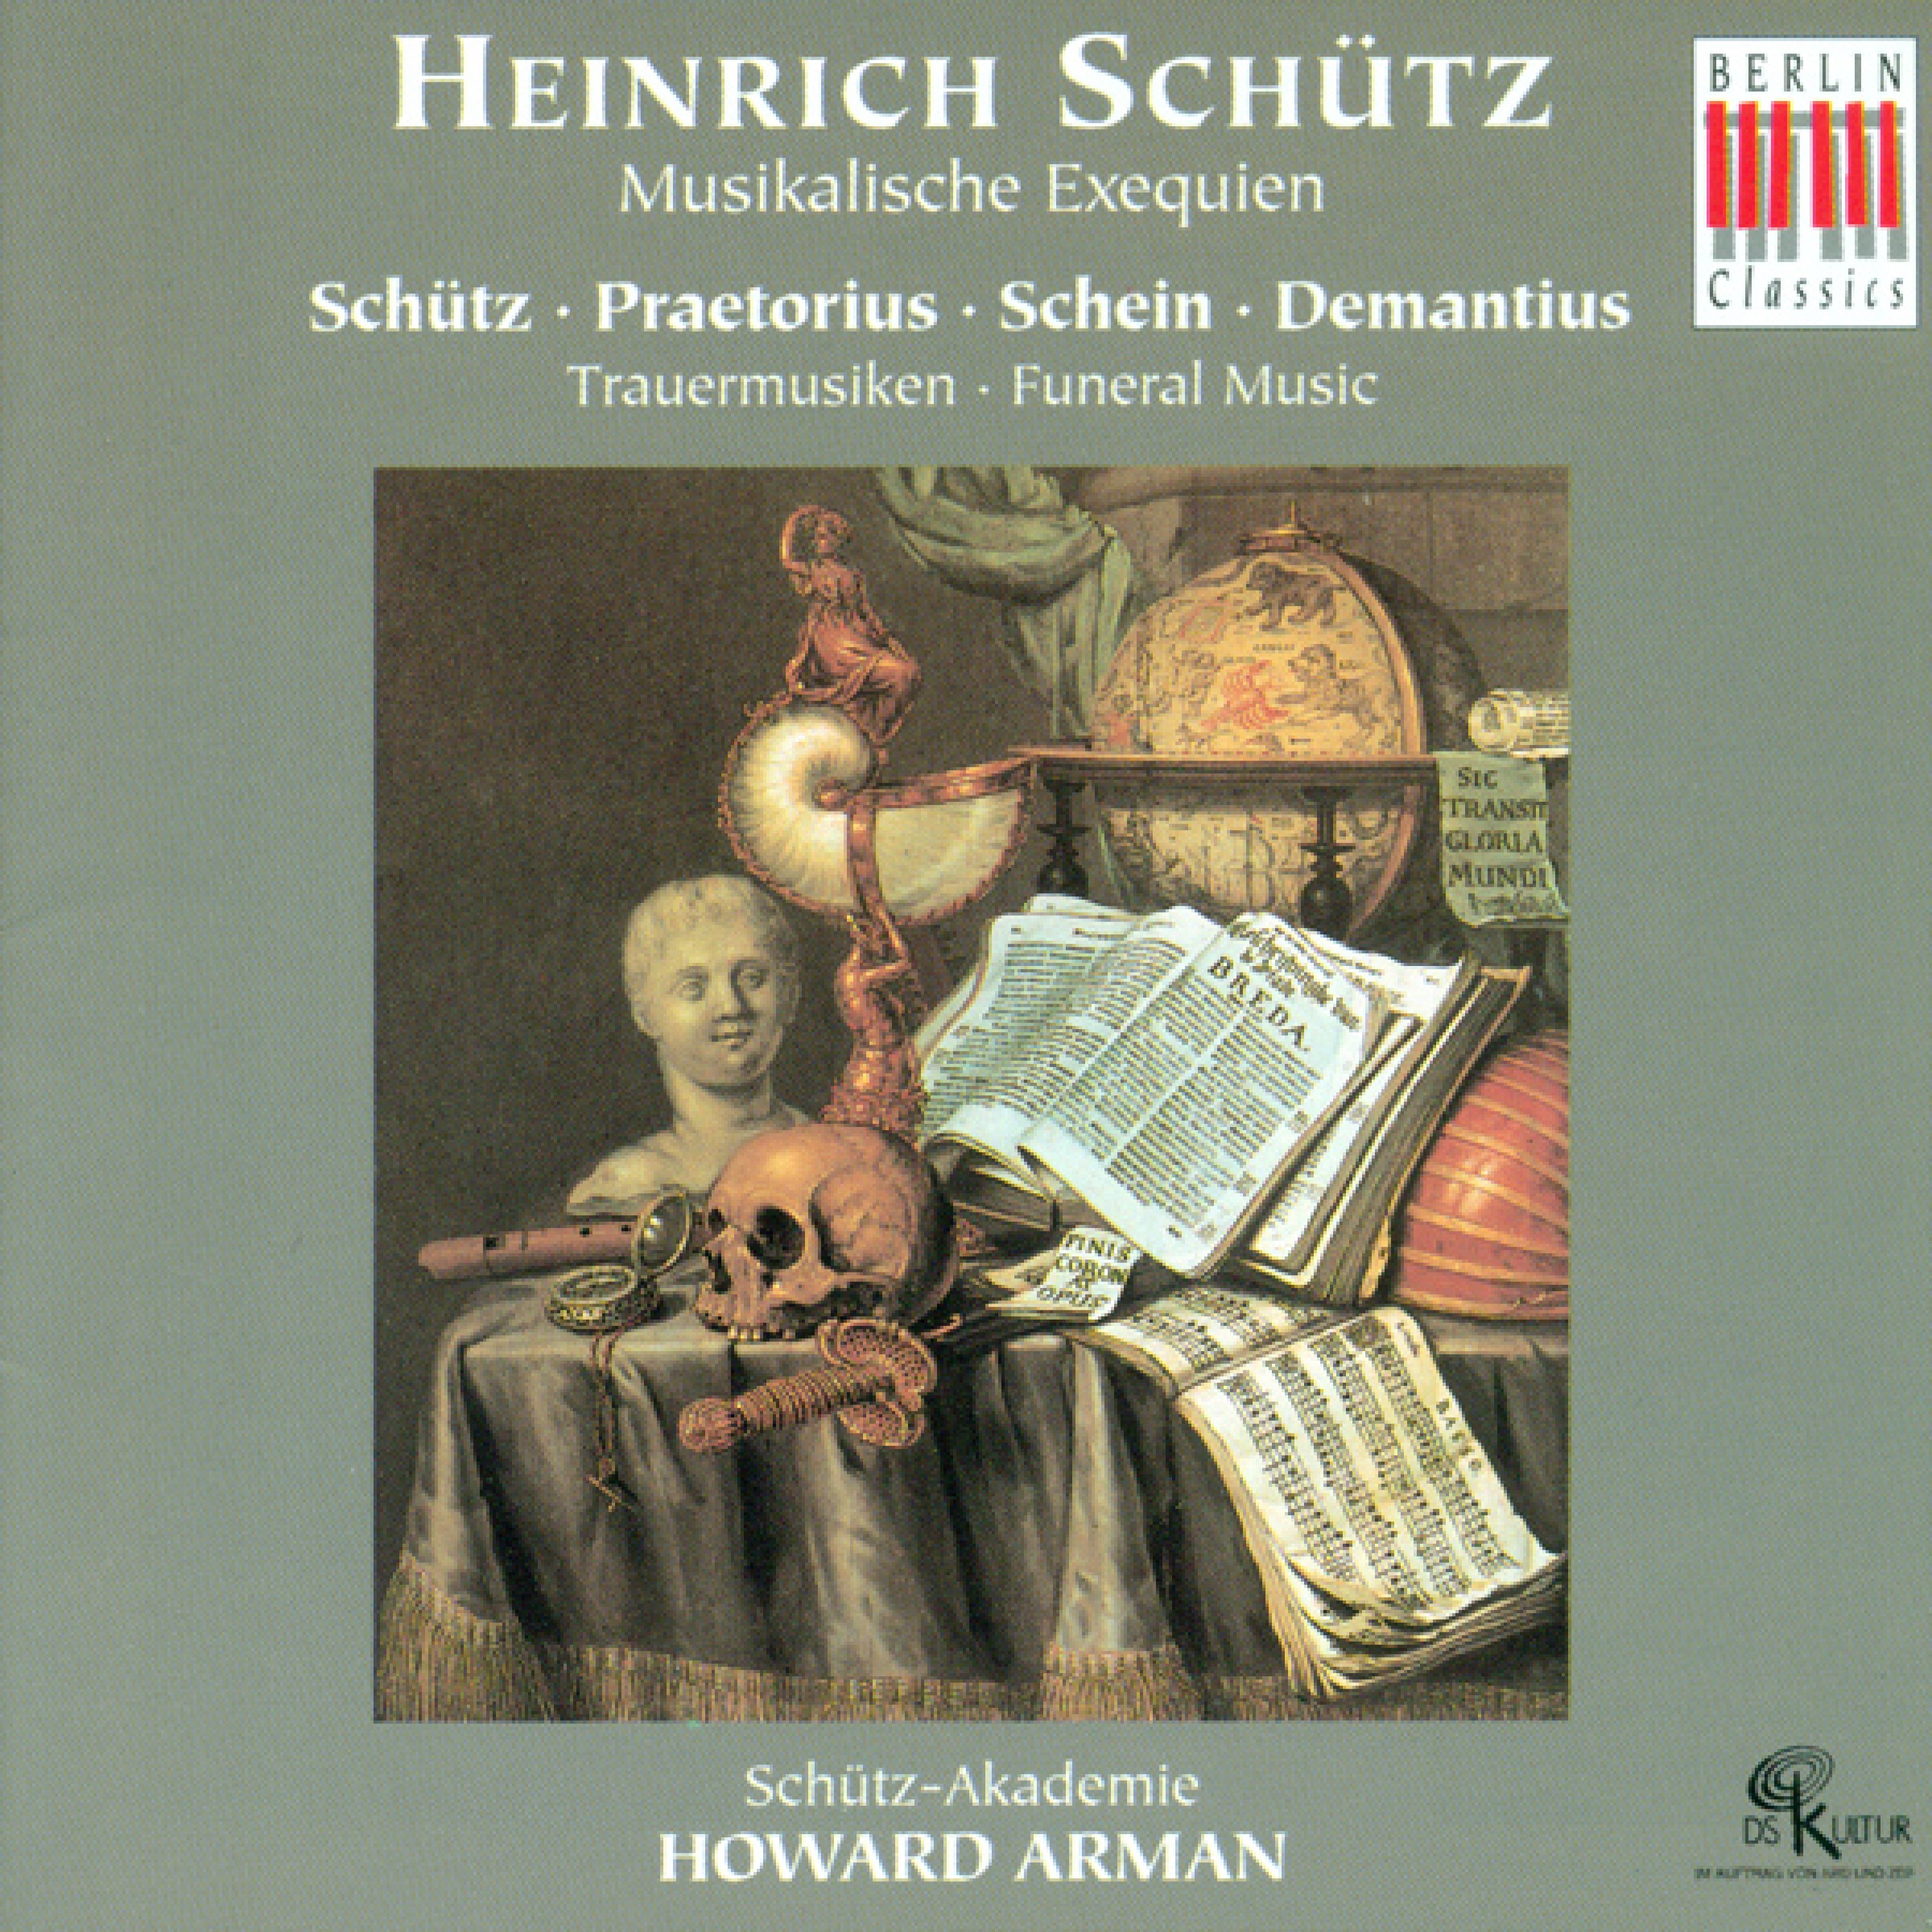 Choral Concert: Schutz Academy - SCHUTZ, H. / PRAETORIUS, M. / SCHEIN, J.H. / DEMANTIUS, C.